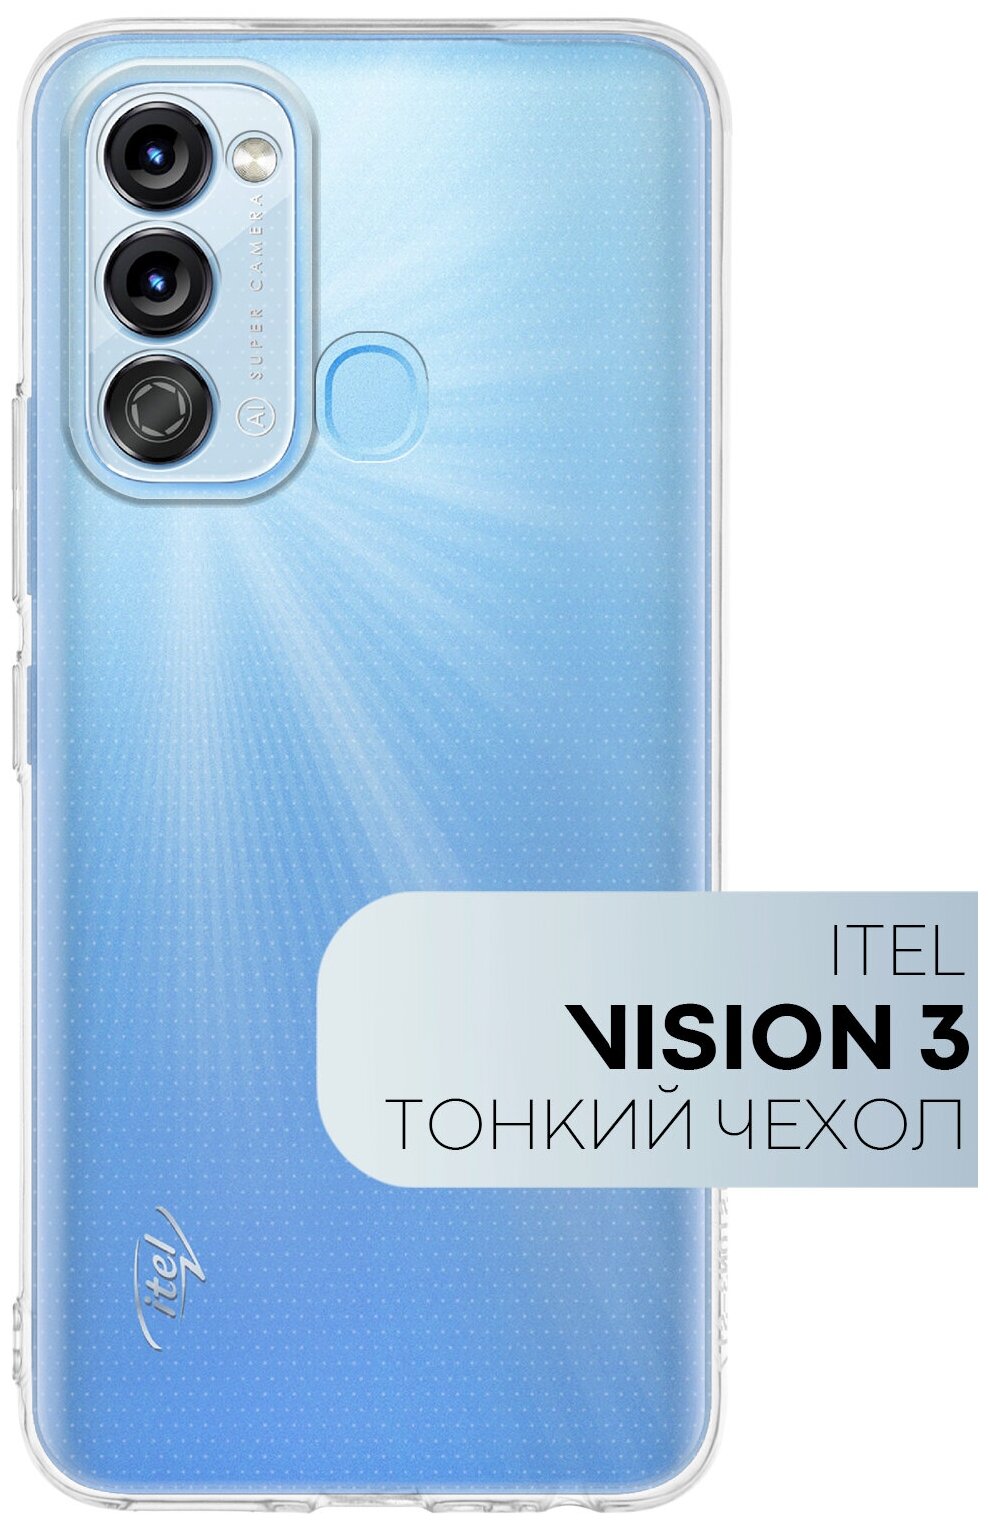 Cиликоновый чехол для Itel Vision 3 (Ител, Итель Визион 3), полная защита камер, прозрачный